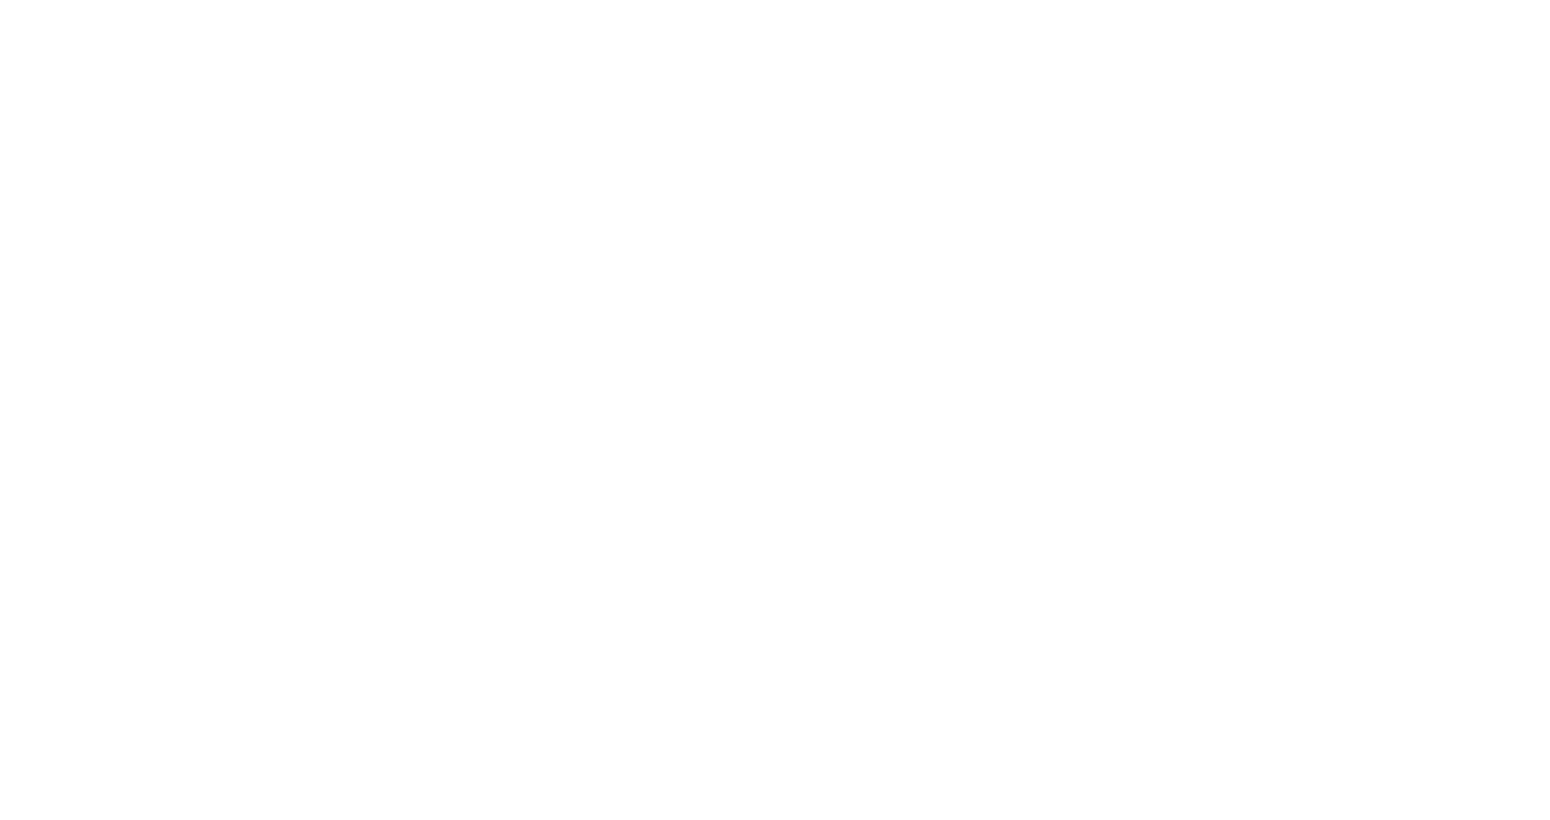 Vapor into the Galaxy